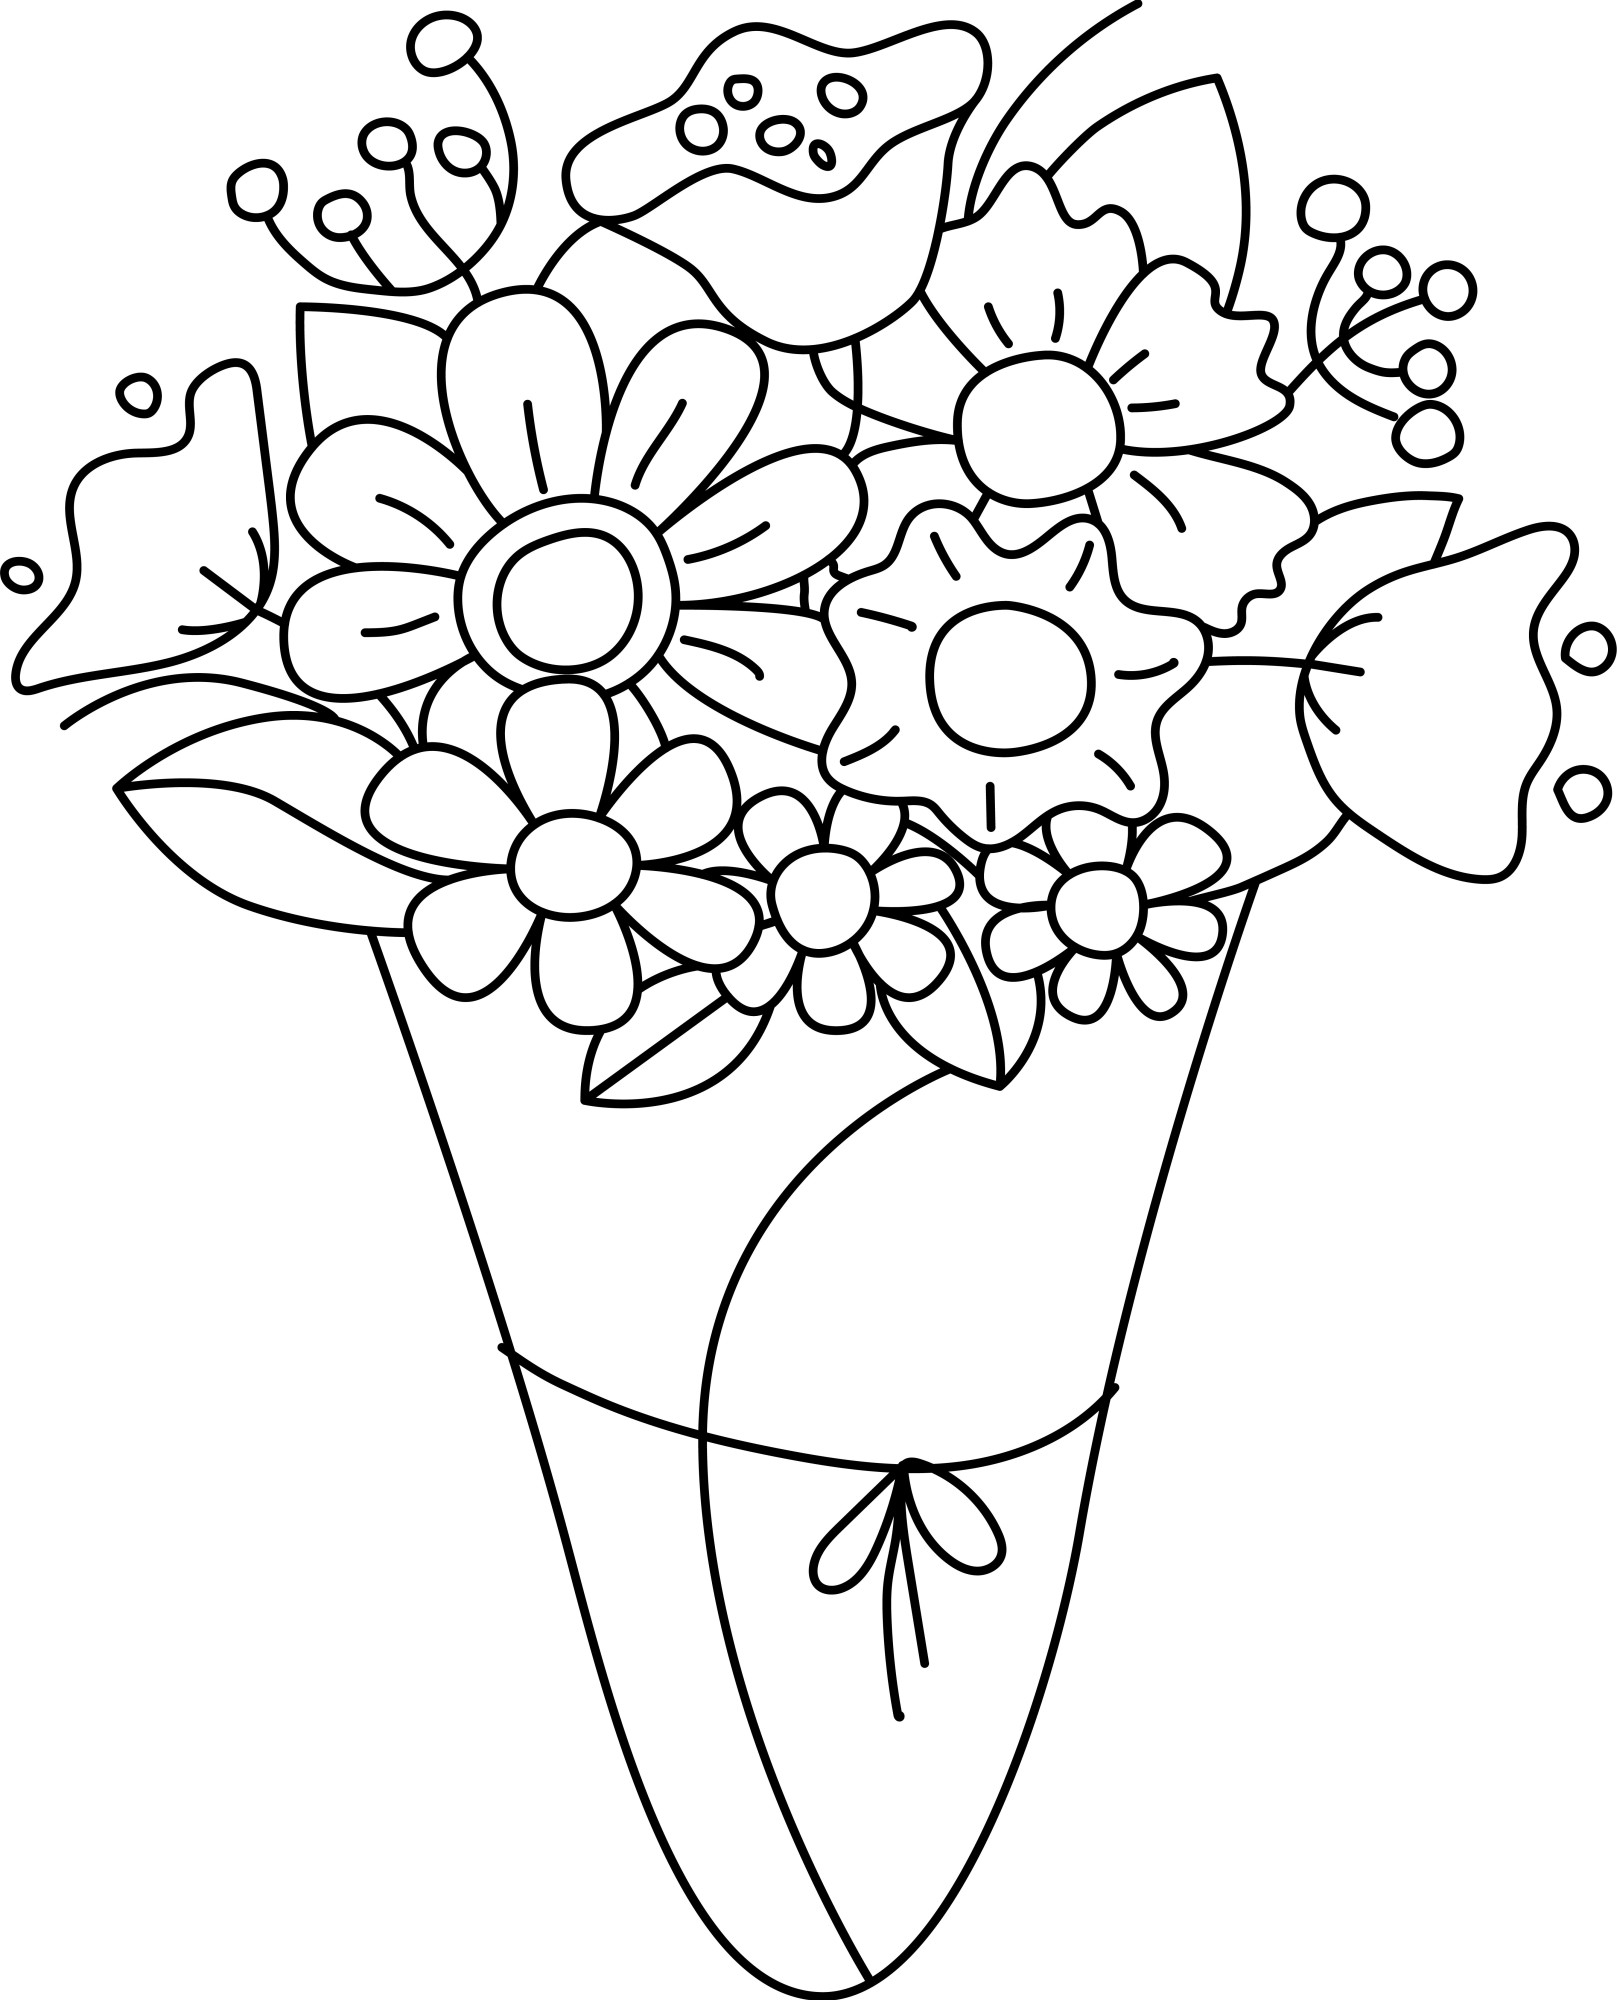 Раскраска для детей: красивый букет полевых цветов в подарочной упаковке